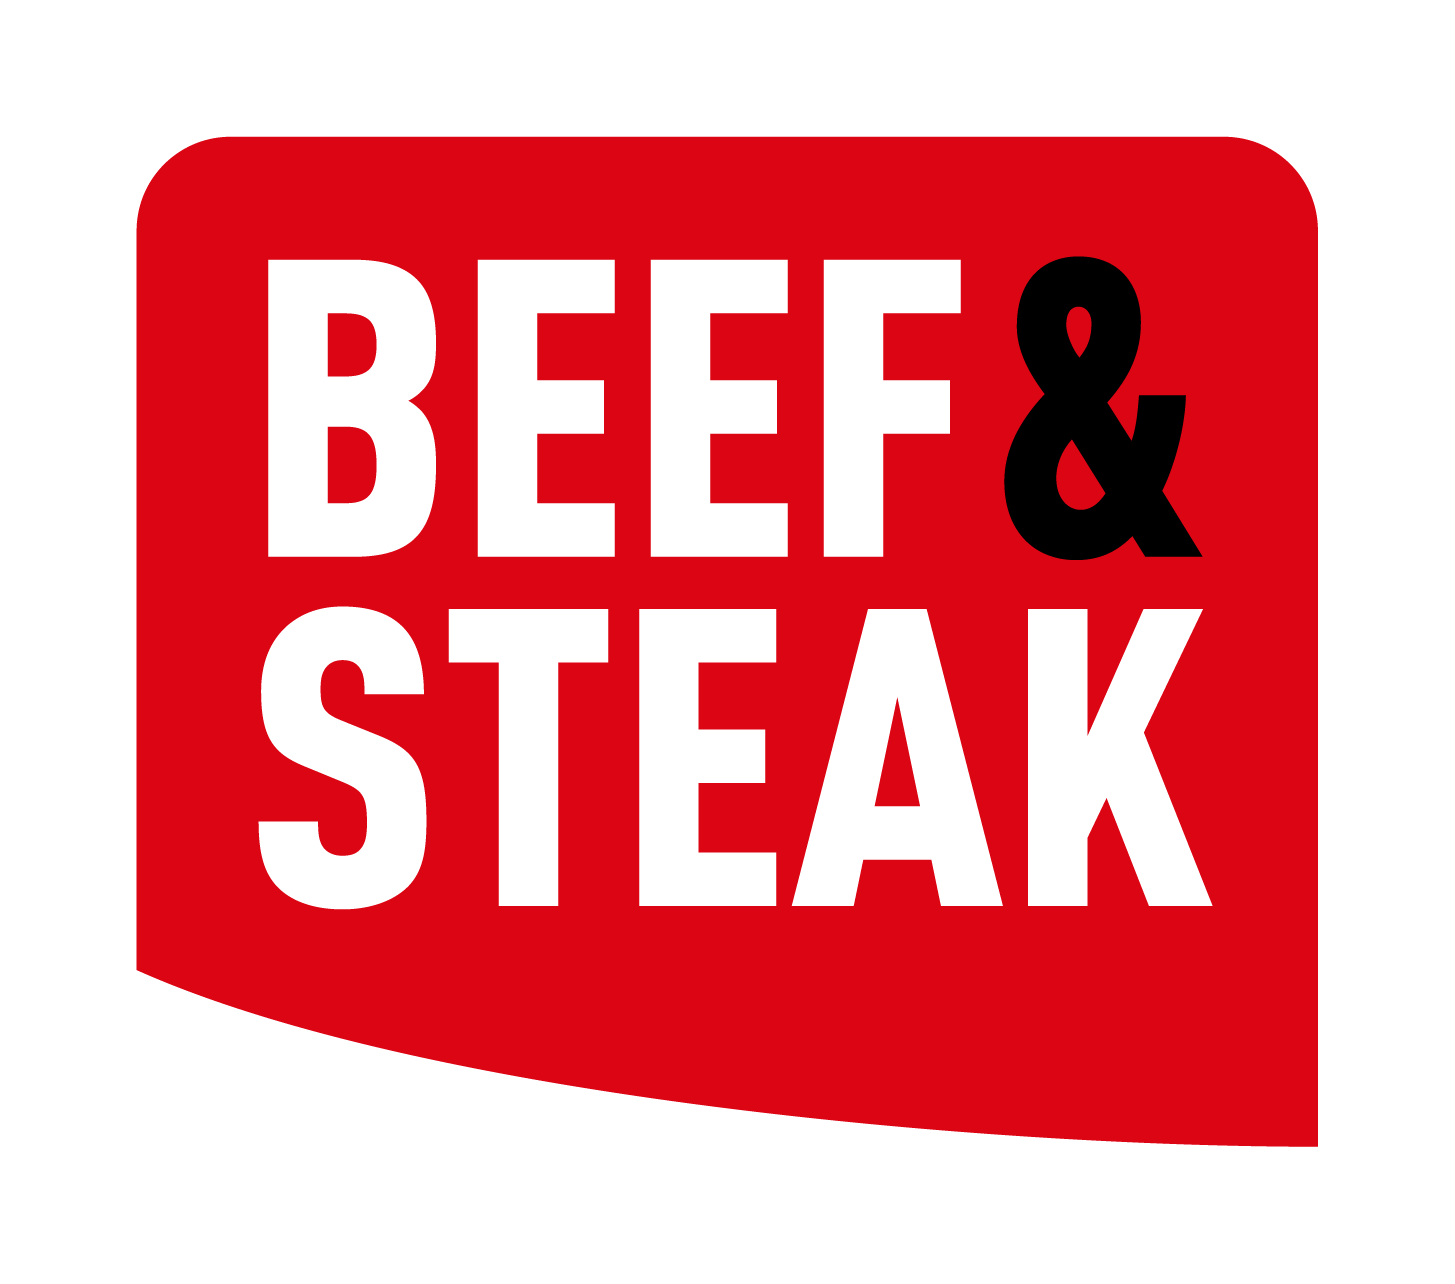 beef-steak-chicken-sitter